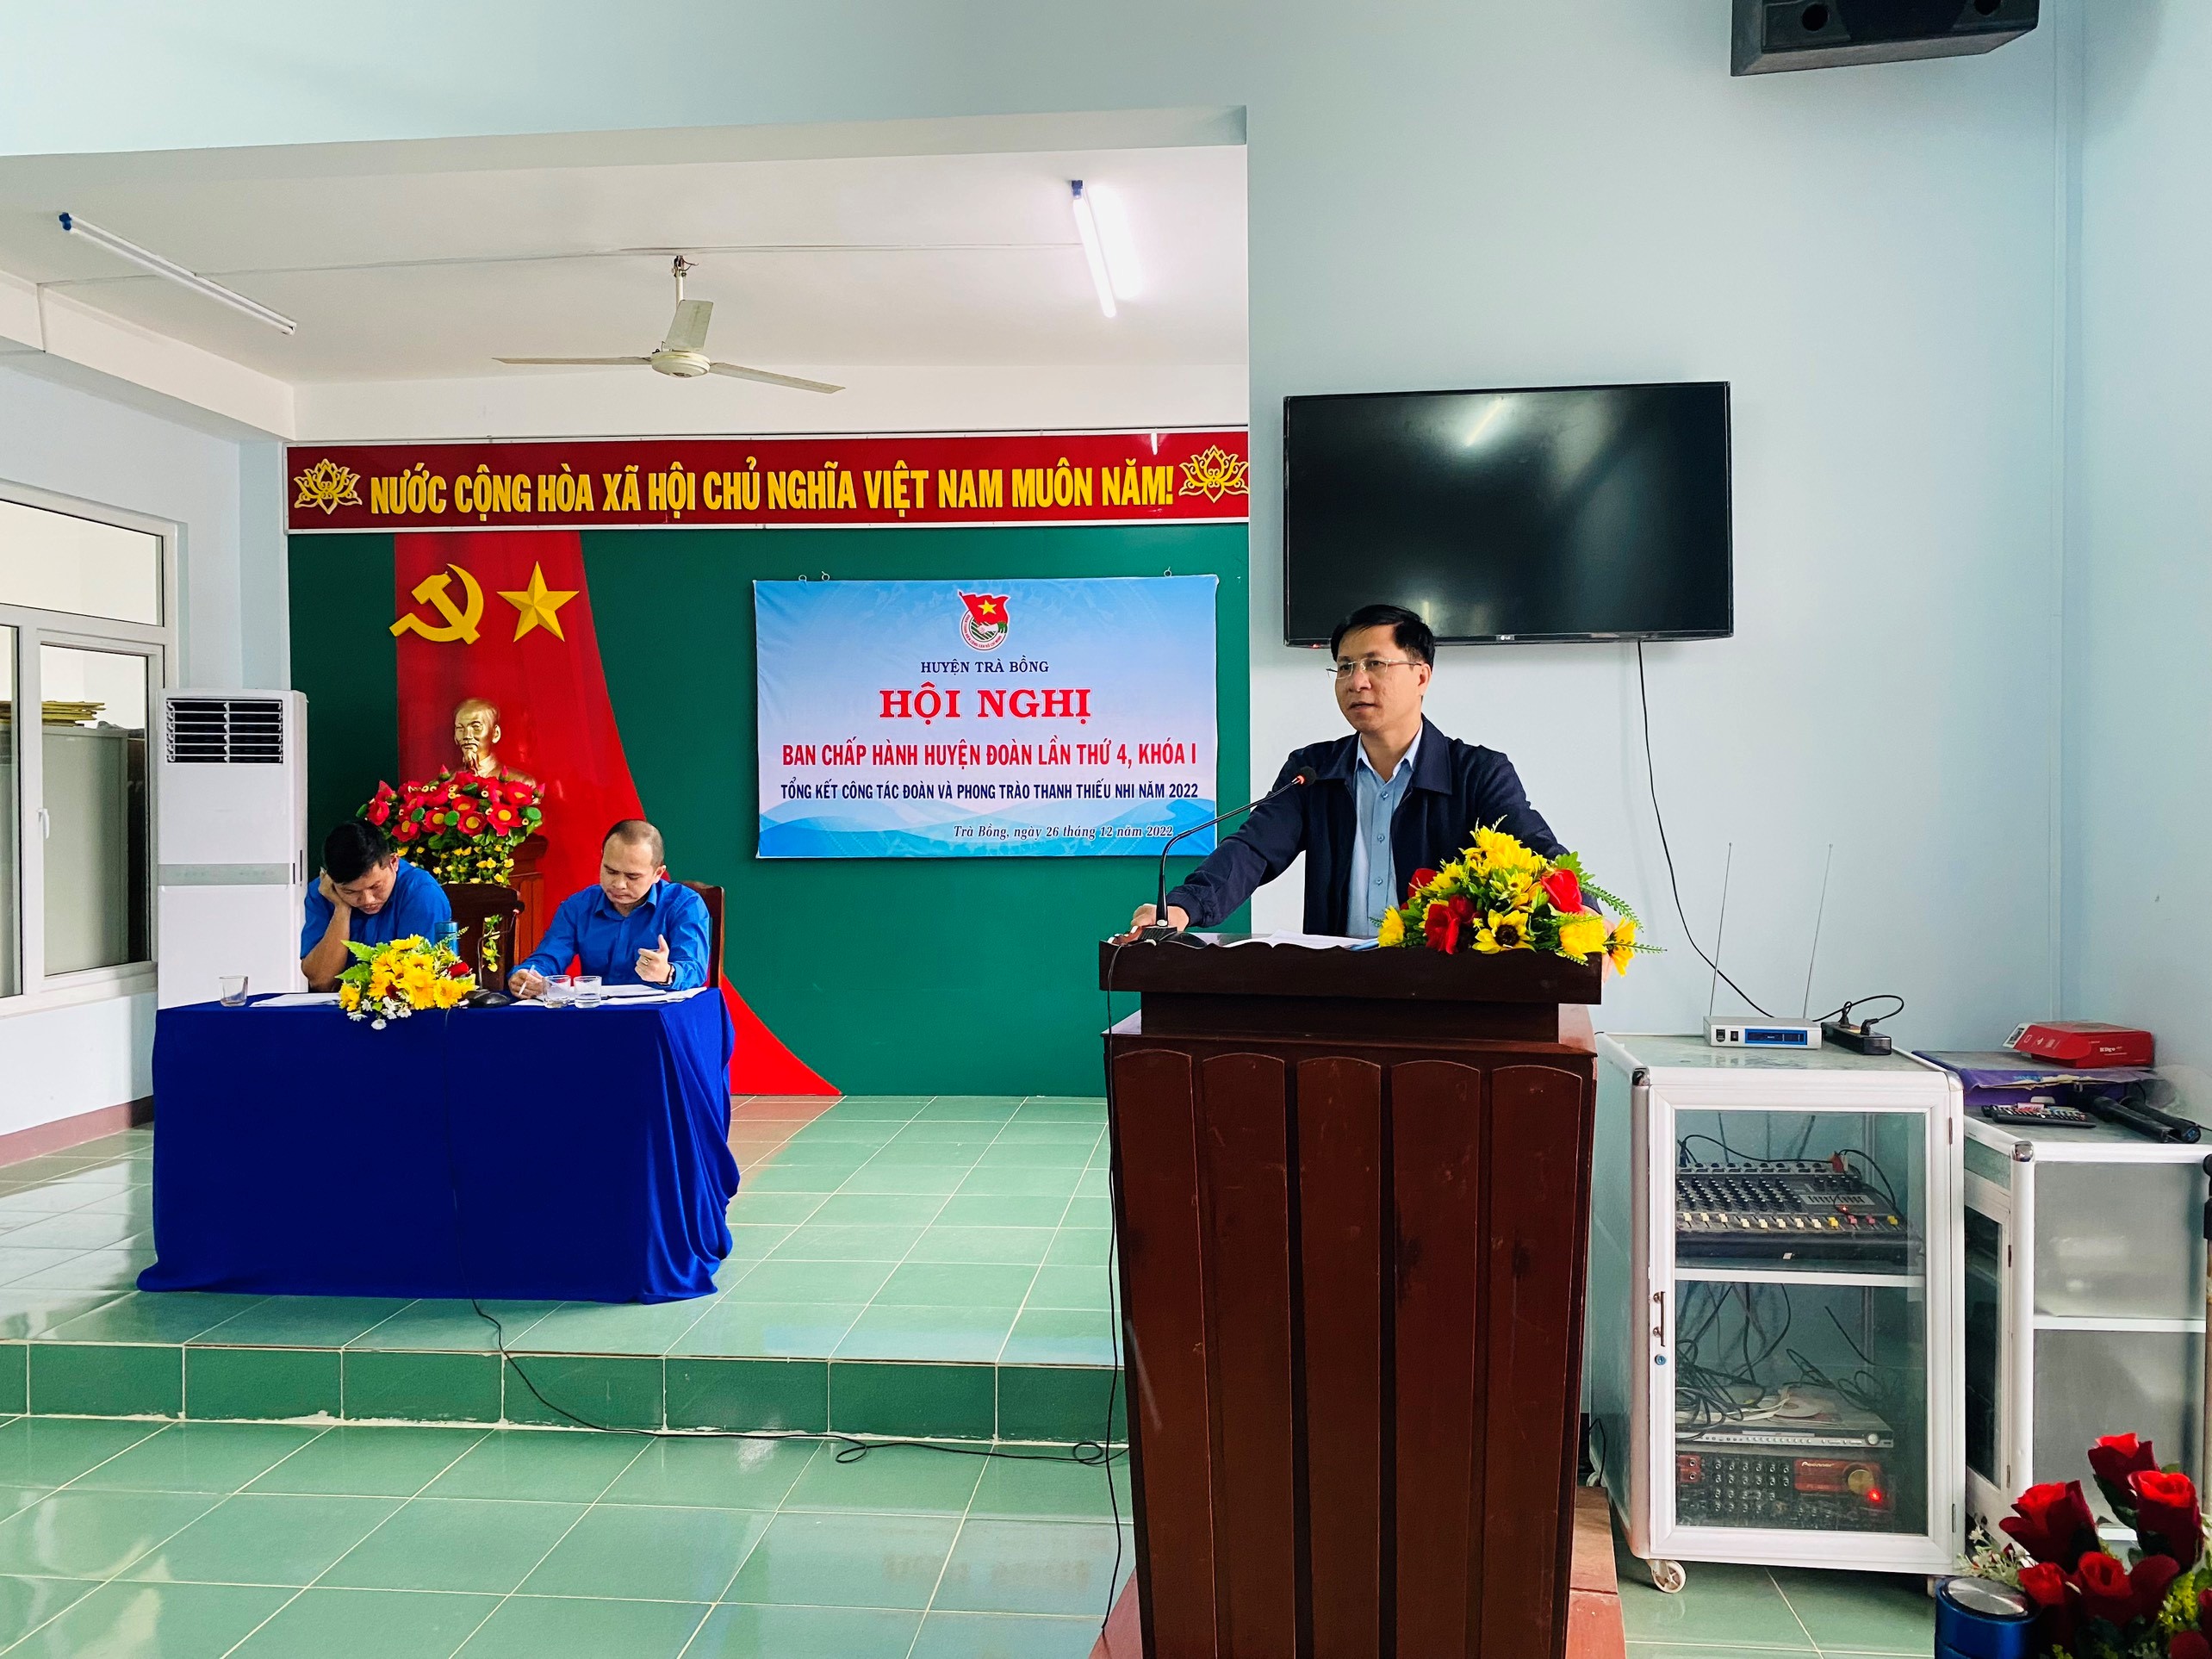 Huyện đoàn Trà Bồng: Tổng kết công tác Đoàn và phong trào thanh thiếu nhi năm 2022.